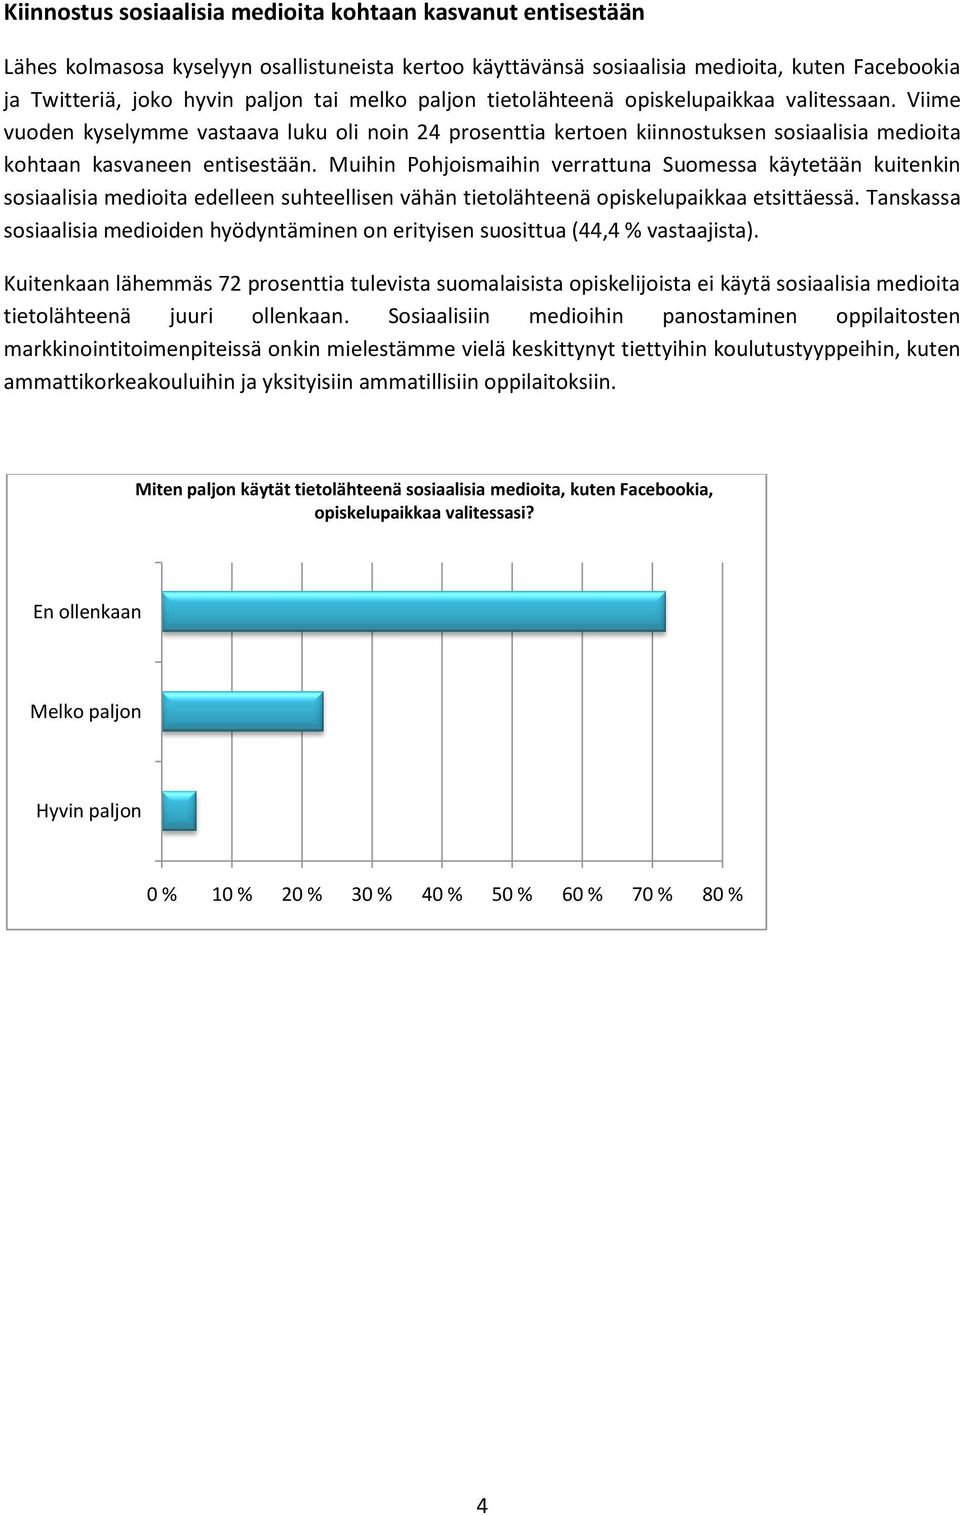 Muihin Pohjoismaihin verrattuna Suomessa käytetään kuitenkin sosiaalisia medioita edelleen suhteellisen vähän tietolähteenä opiskelupaikkaa etsittäessä.